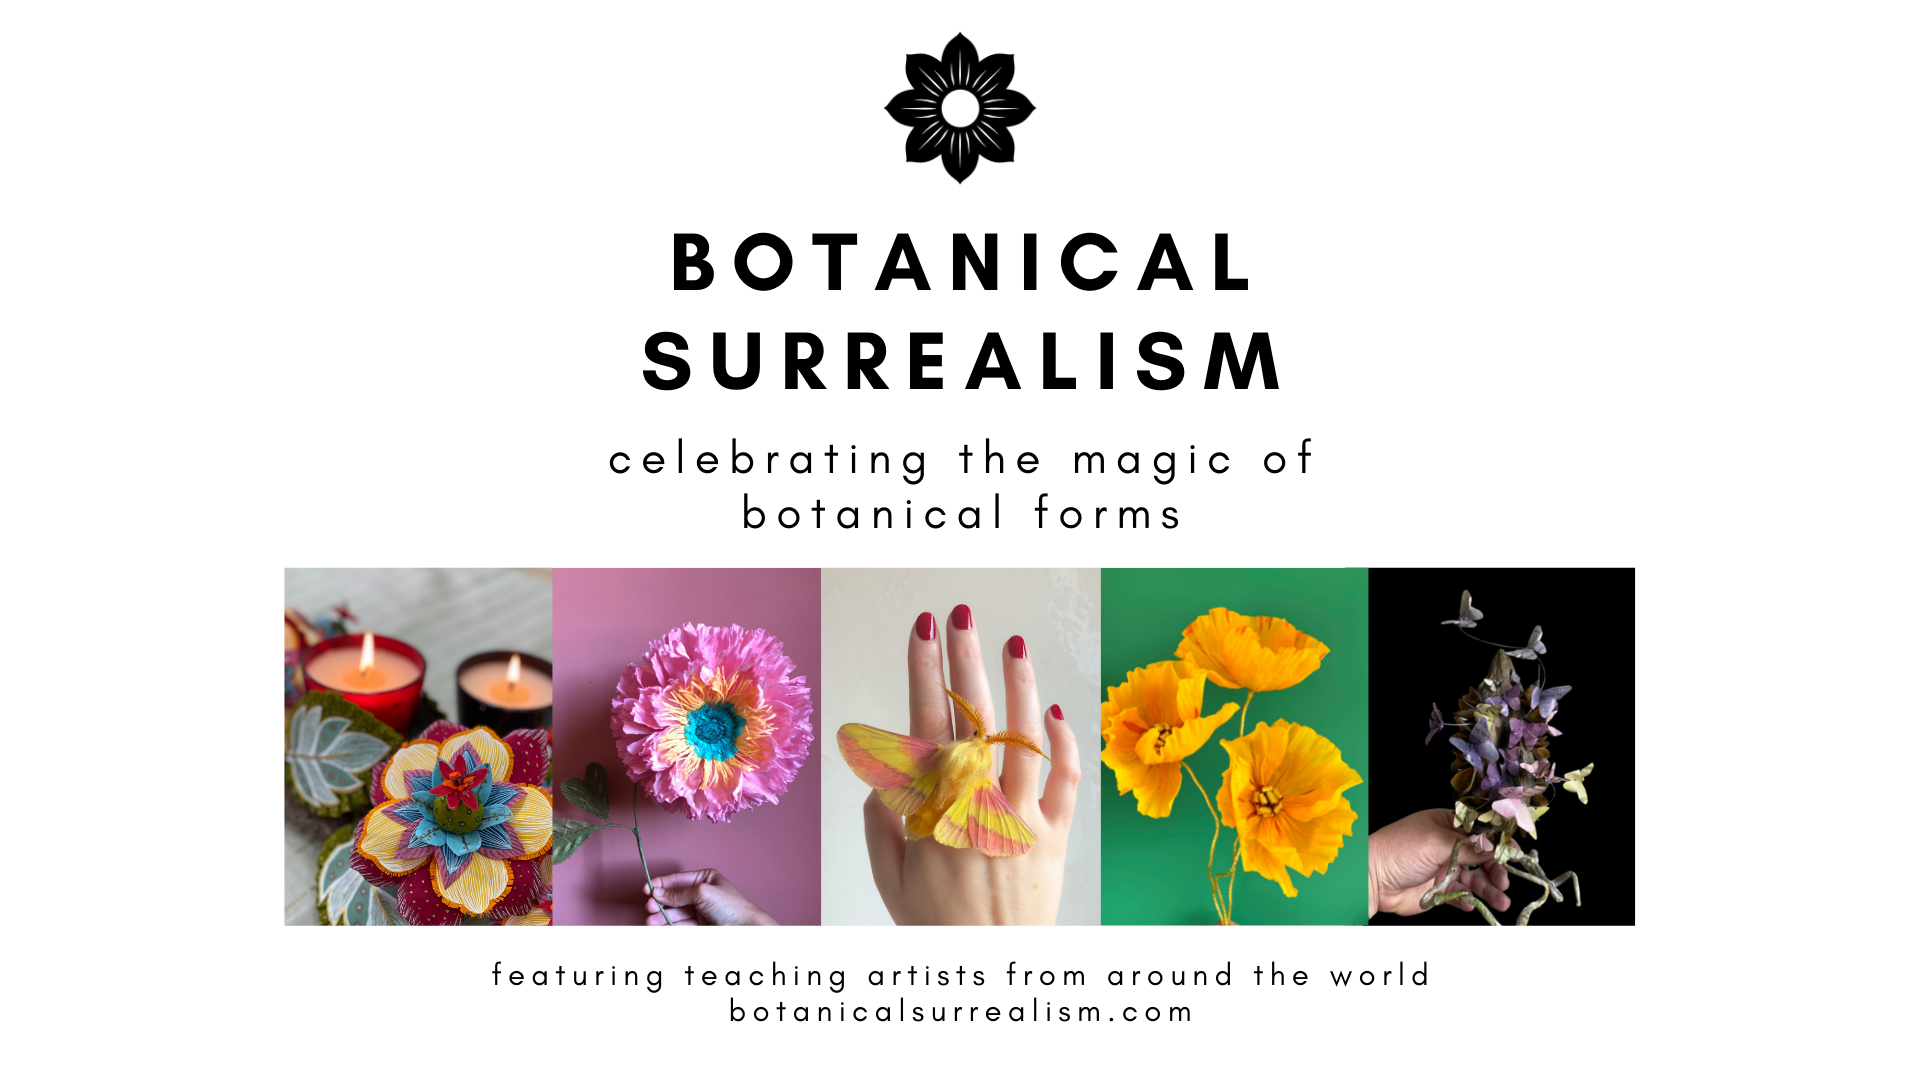 botanicalsurrealism.com